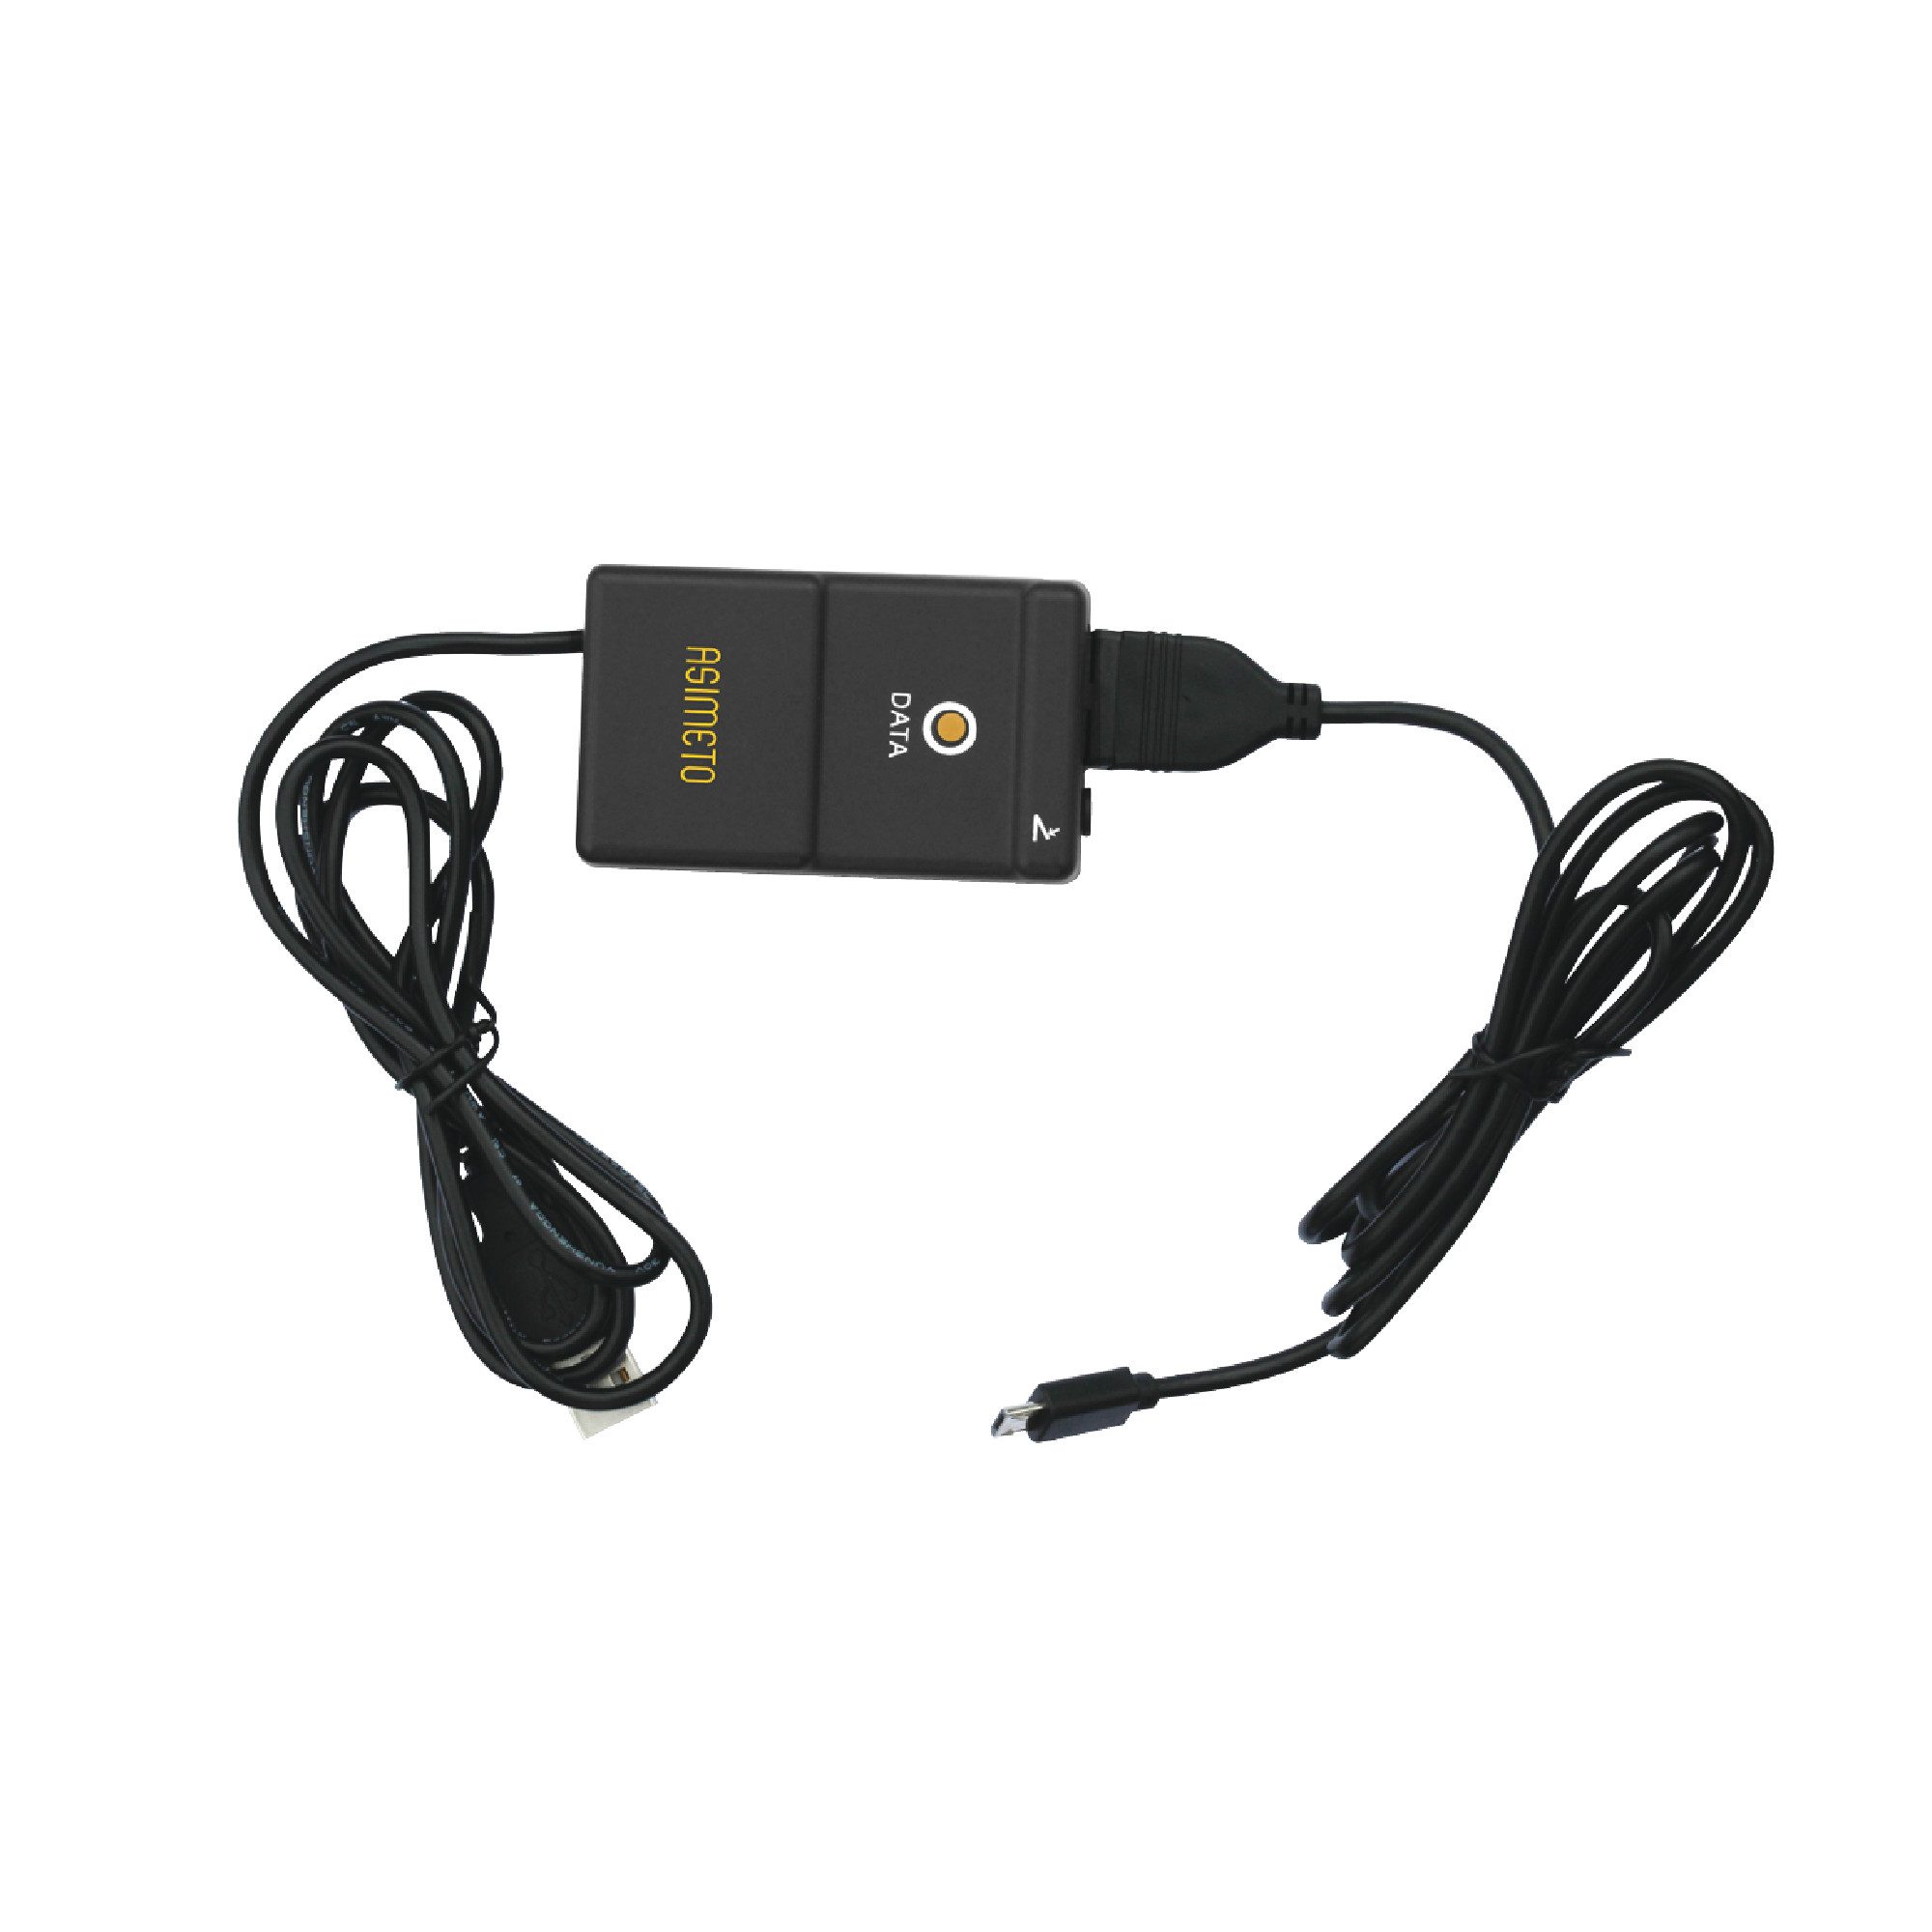 Cable for Asimeto IP65 Digital Indicators